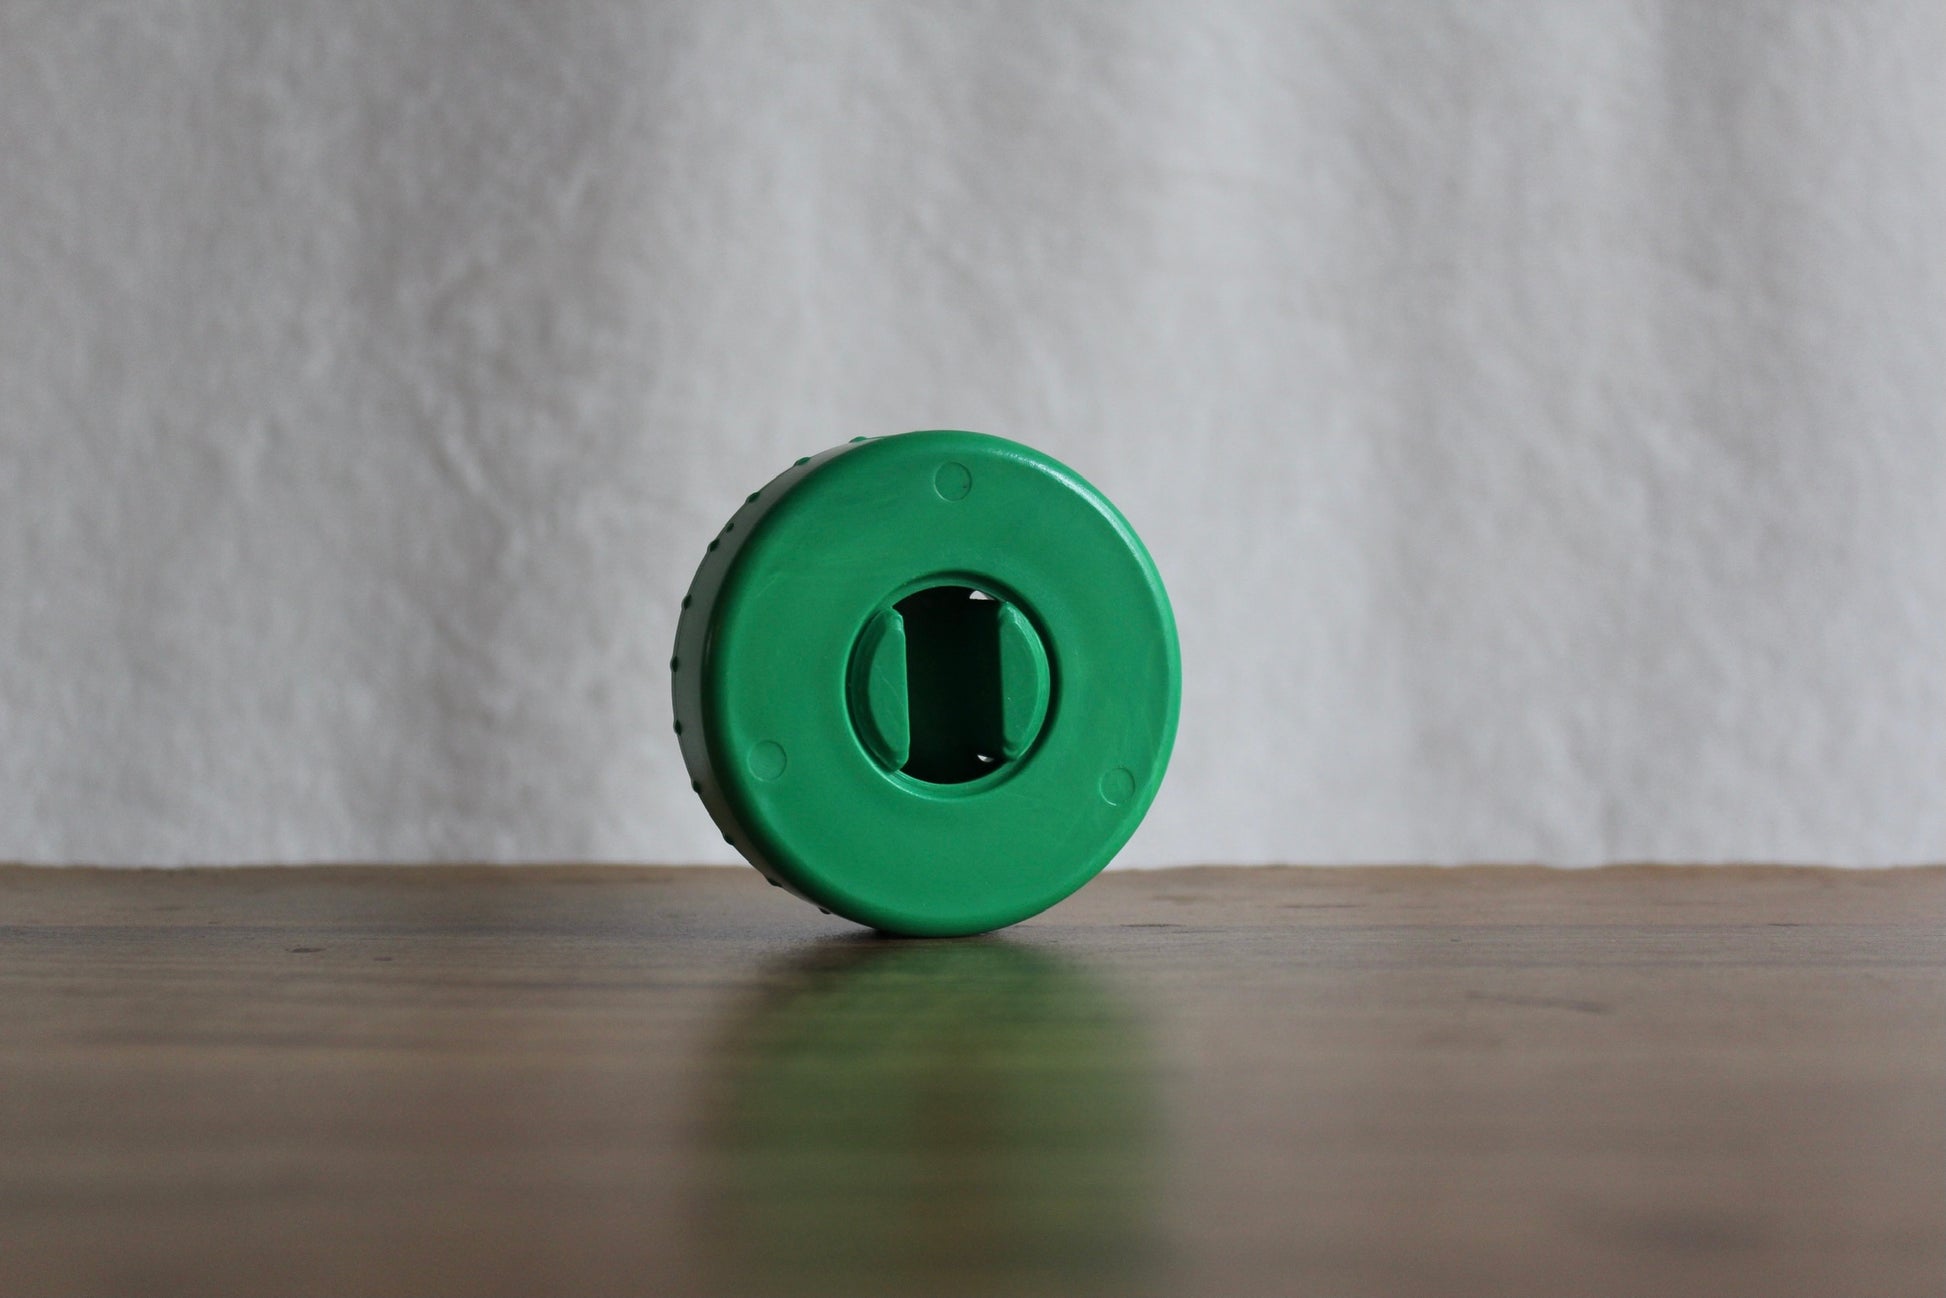 Green-colored CordPuck cord organizer